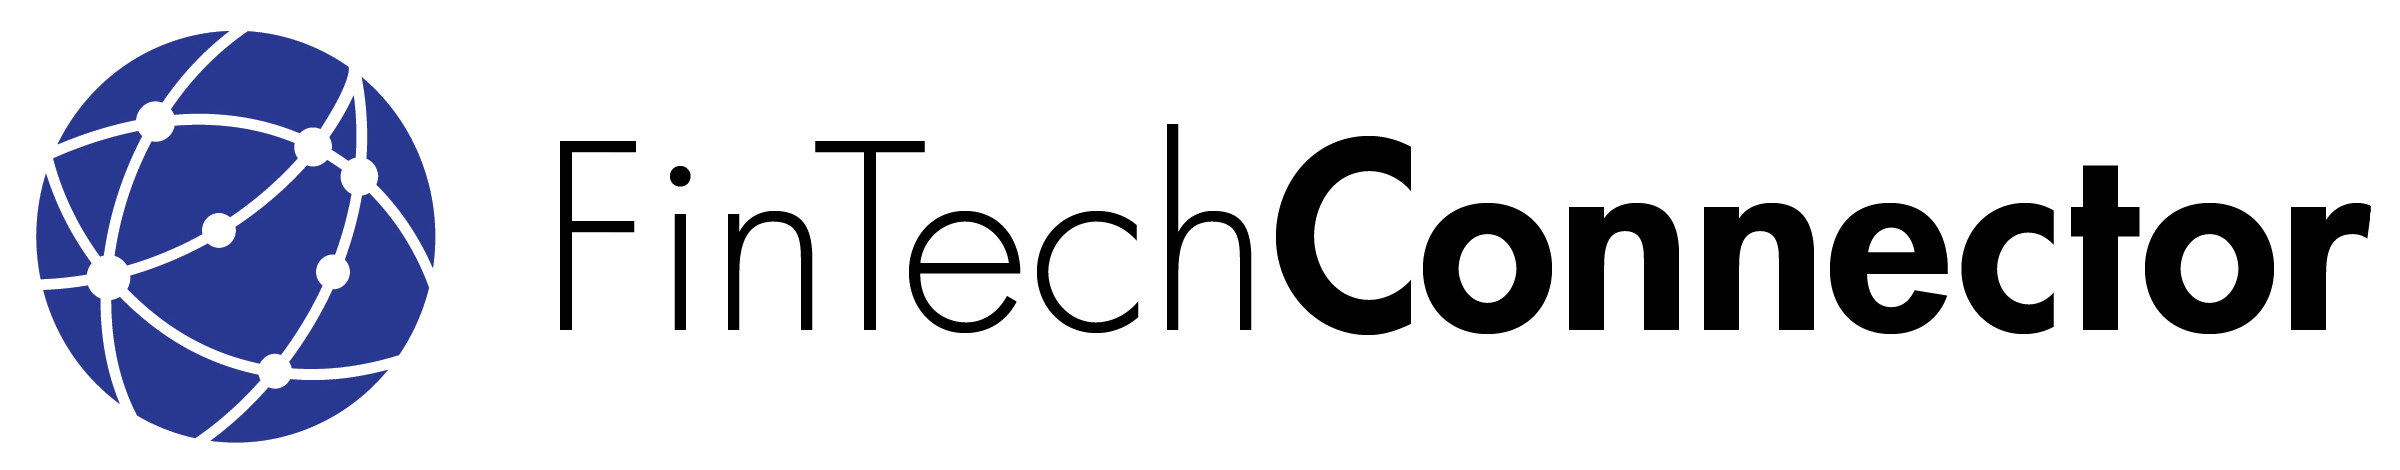 FinTech Connector - LA Logo